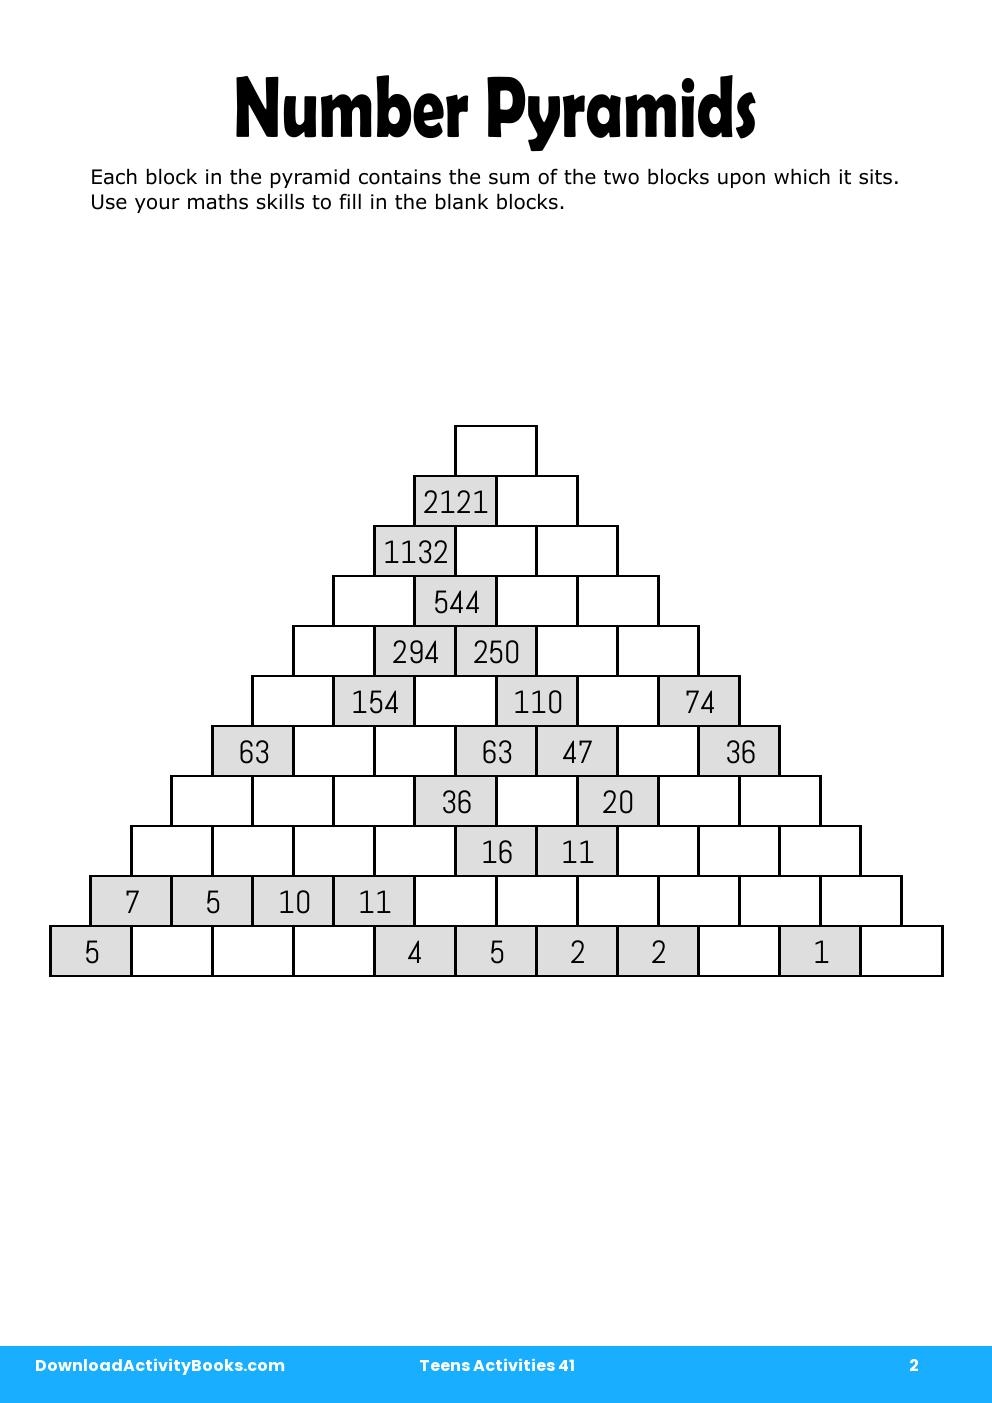 Number Pyramids in Teens Activities 41